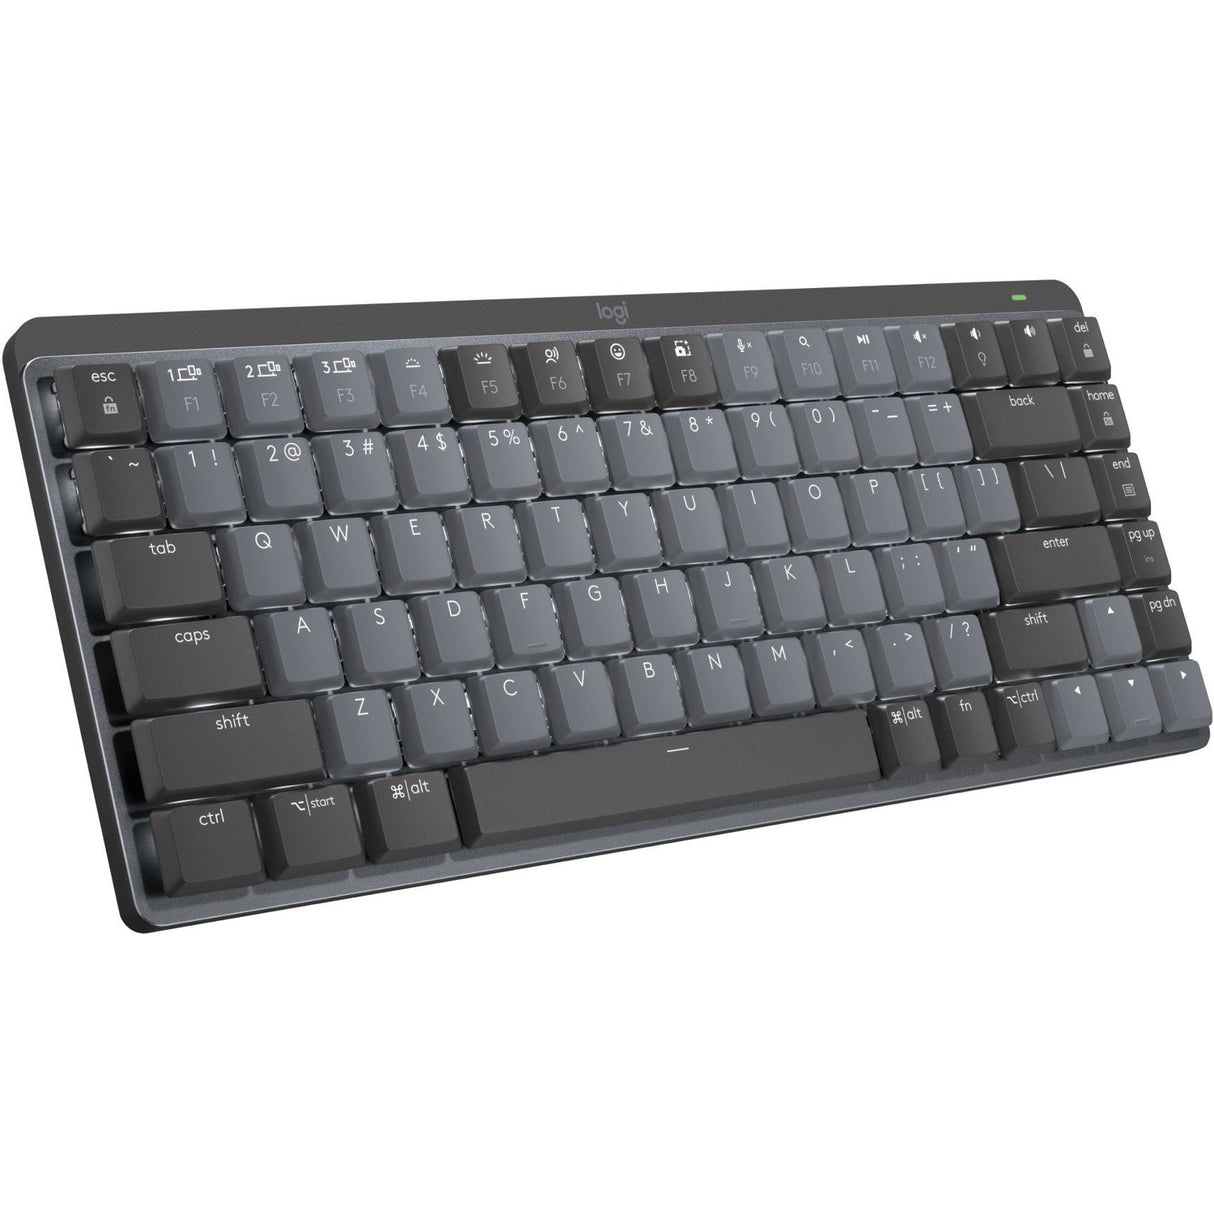 Logitech MX Mechanical Mini Minimalist Wireless Illuminated Keyboard (Linear) (Graphite)